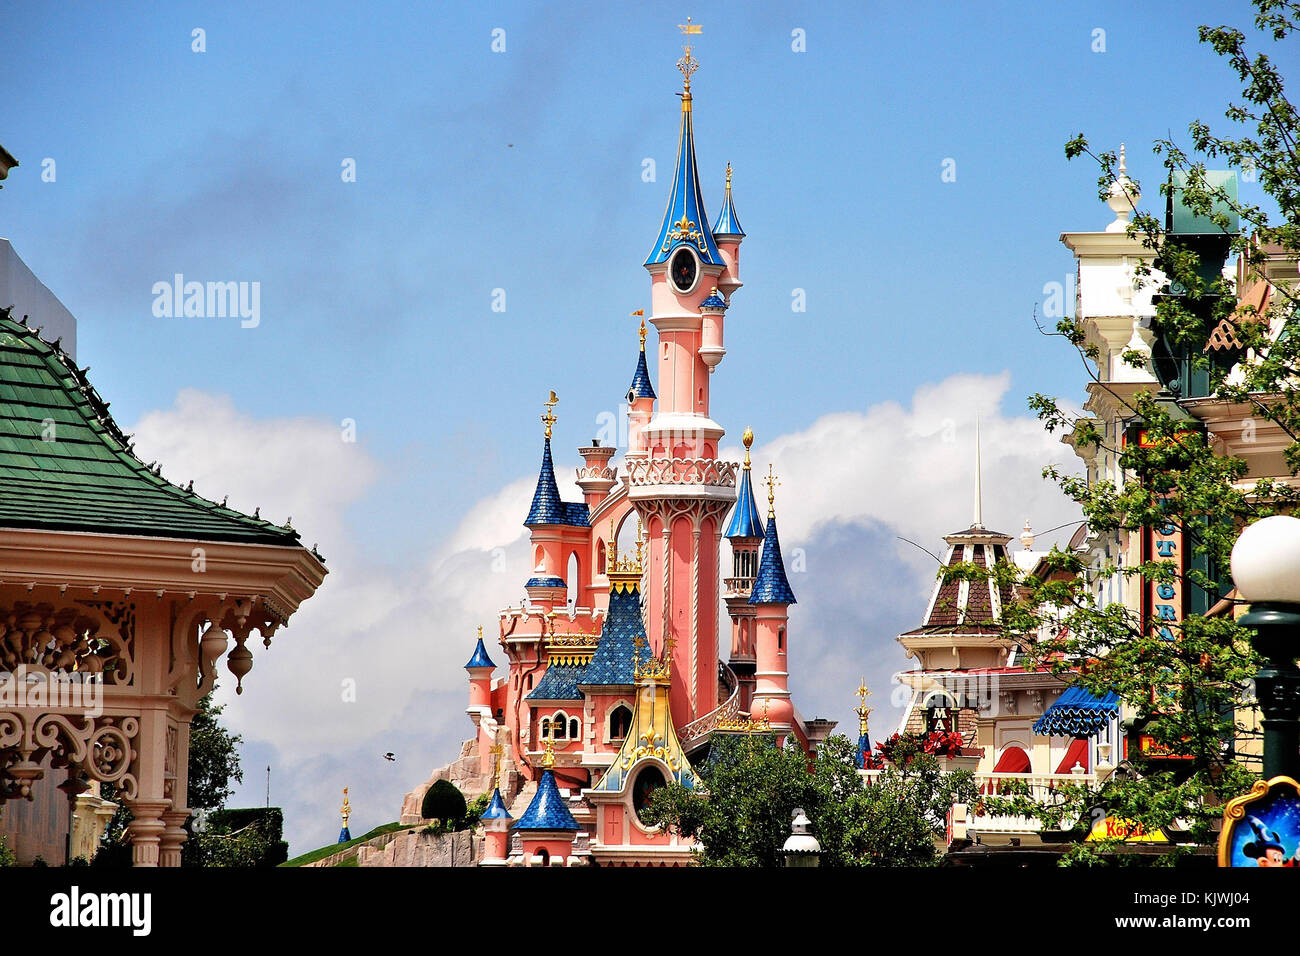 Disney Castle, Marne-la-Vallée, Paris, France Stock Photo